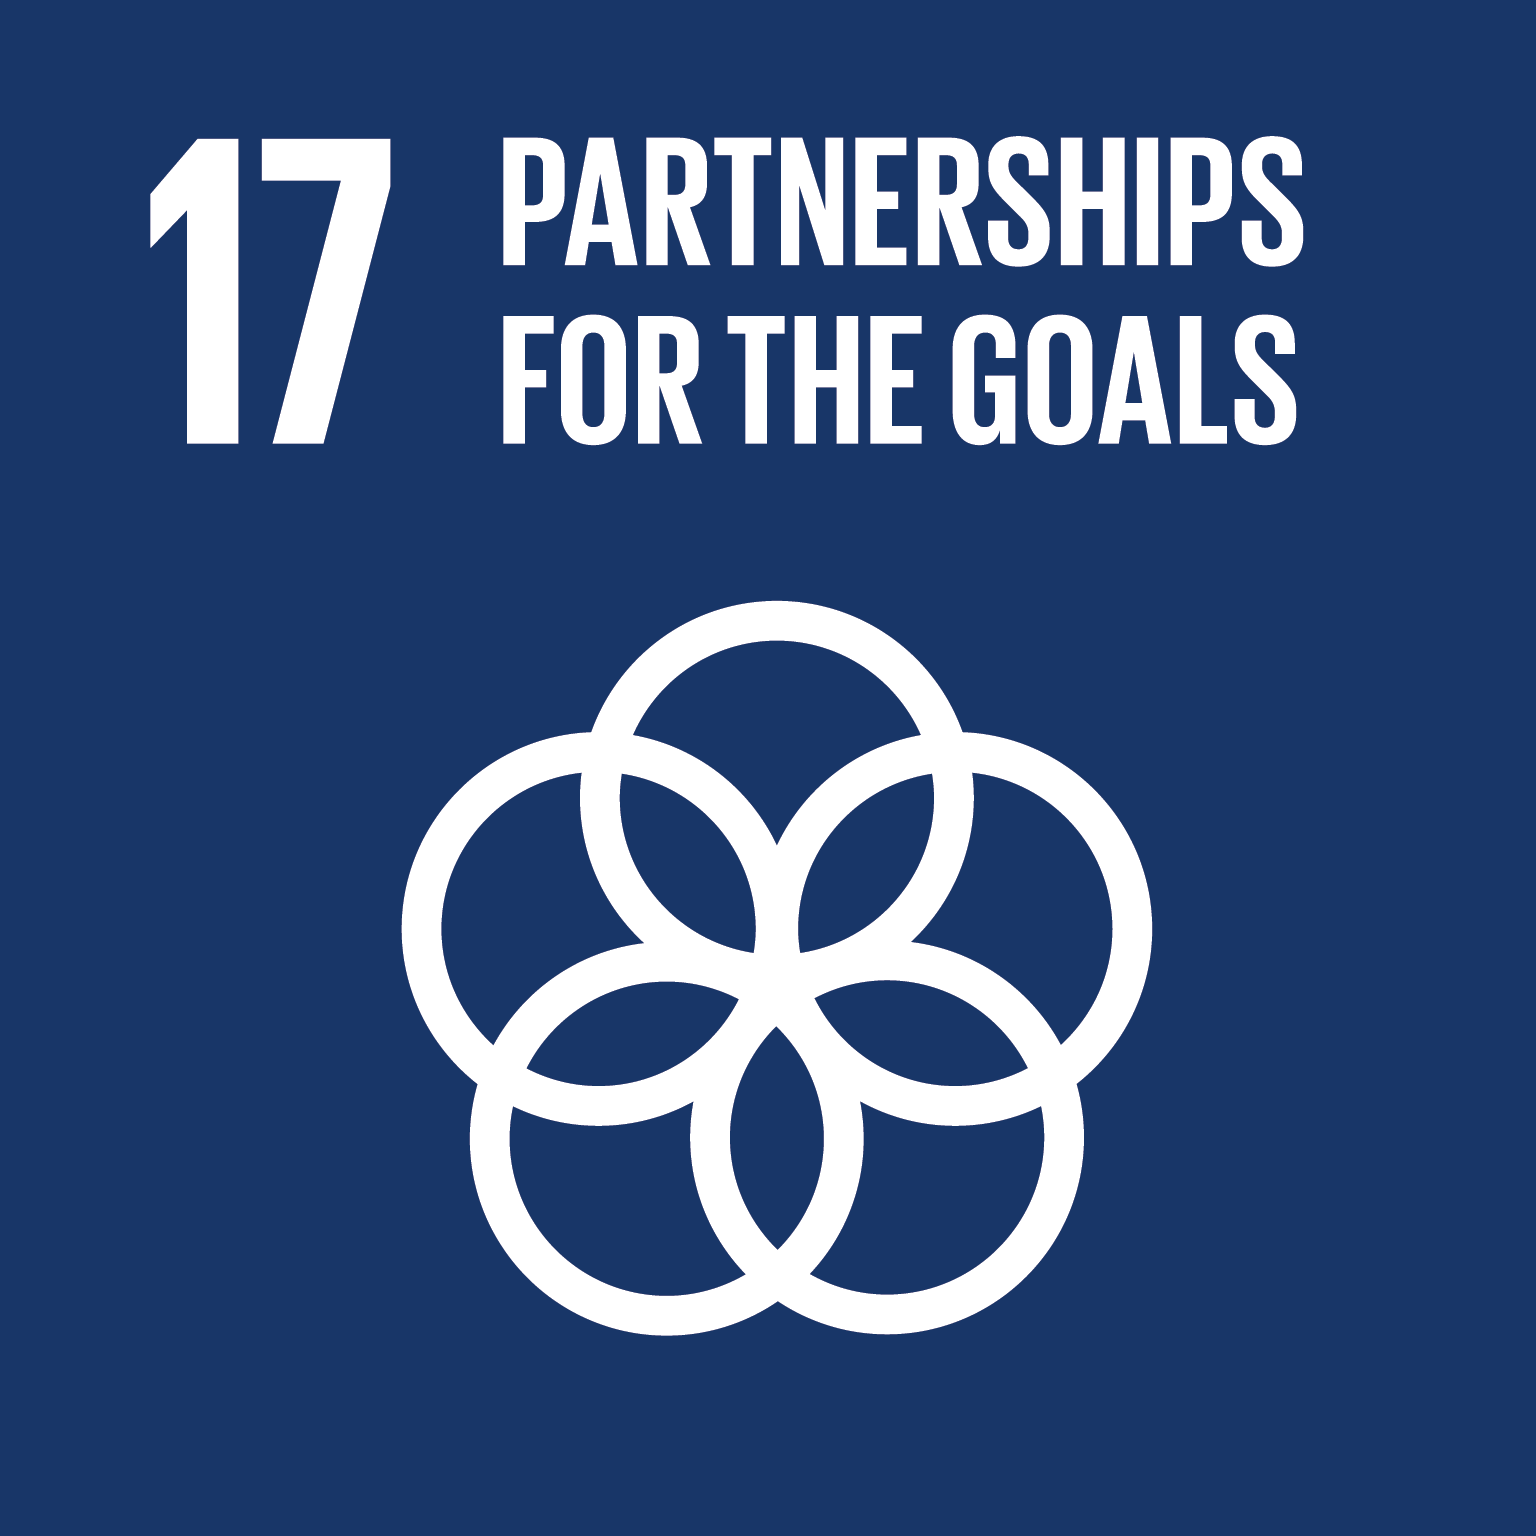 SDG - 17: Partnerships for the goals